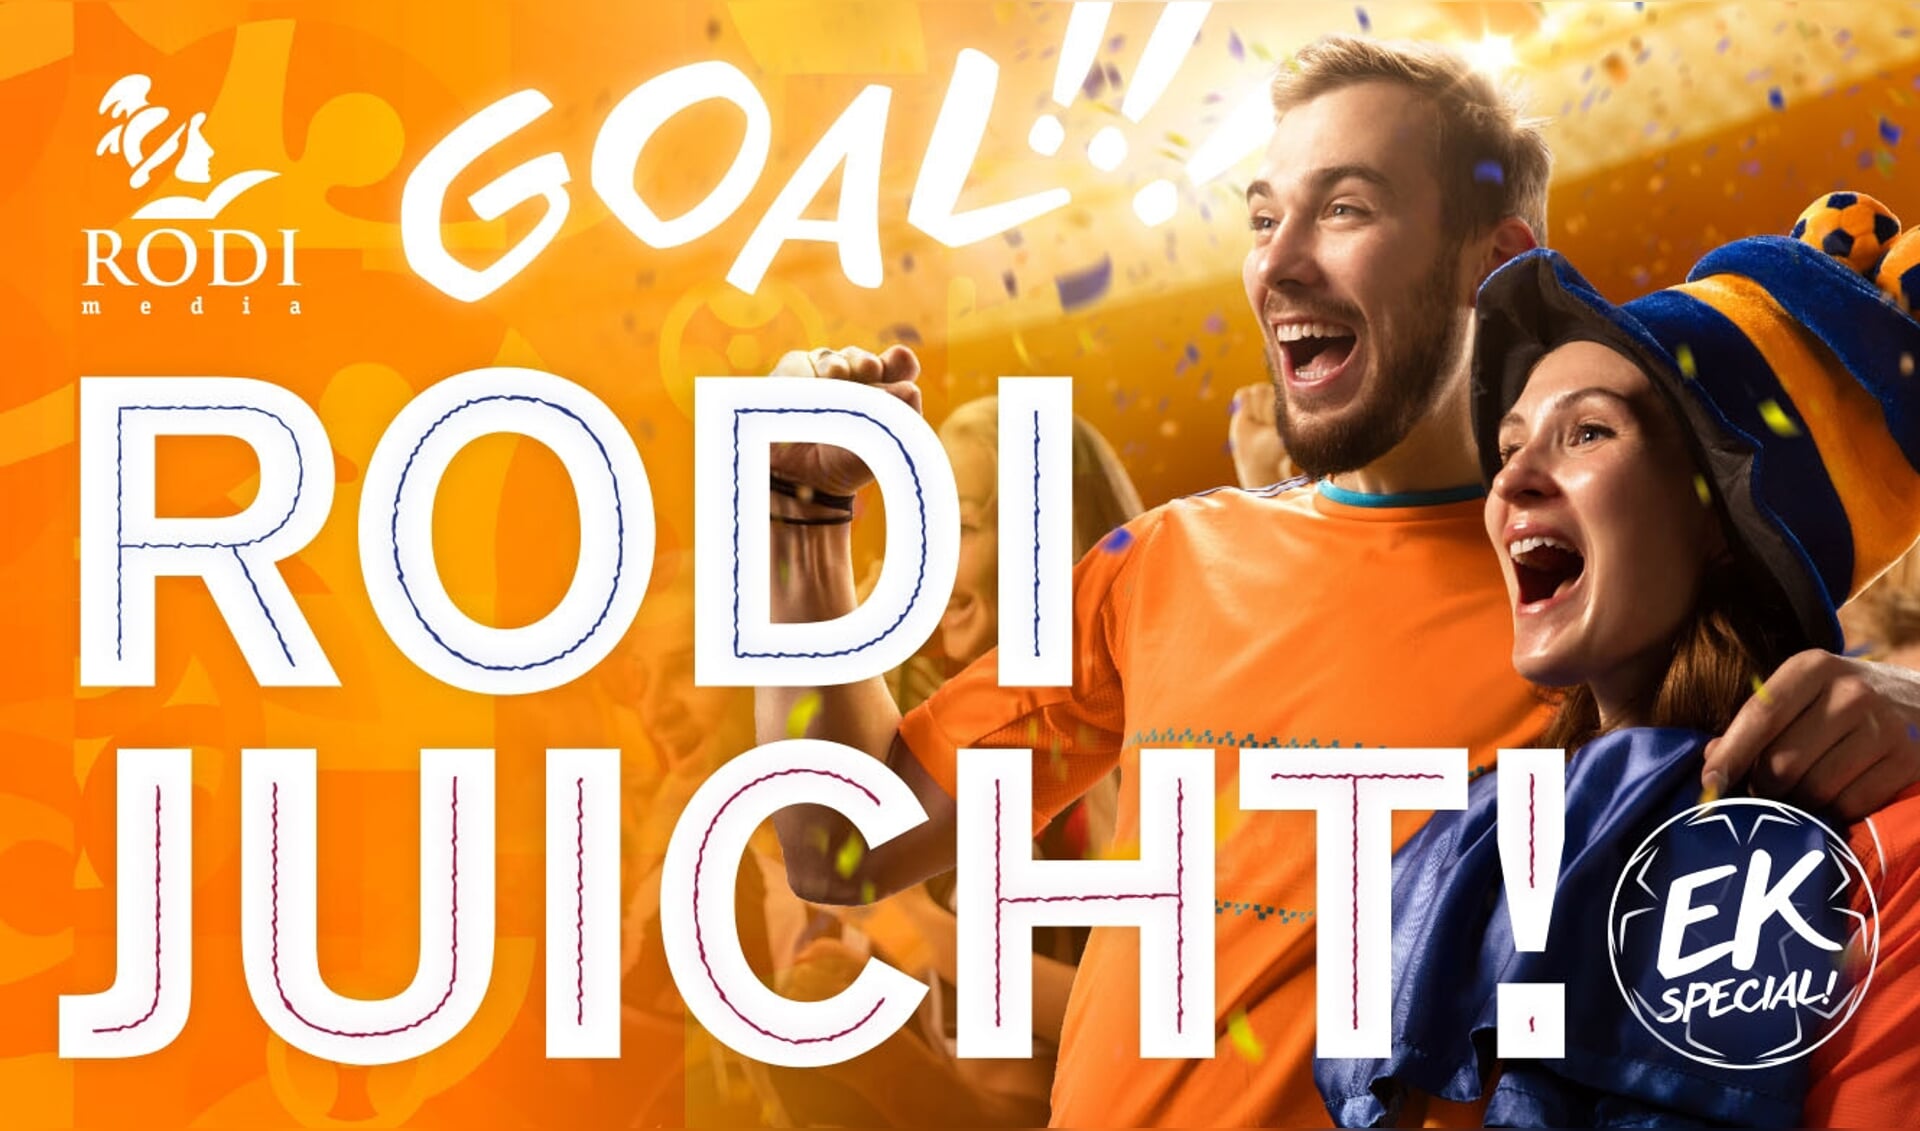 Gezocht: de grootste voetbal-/Oranjefans van Haarlem!